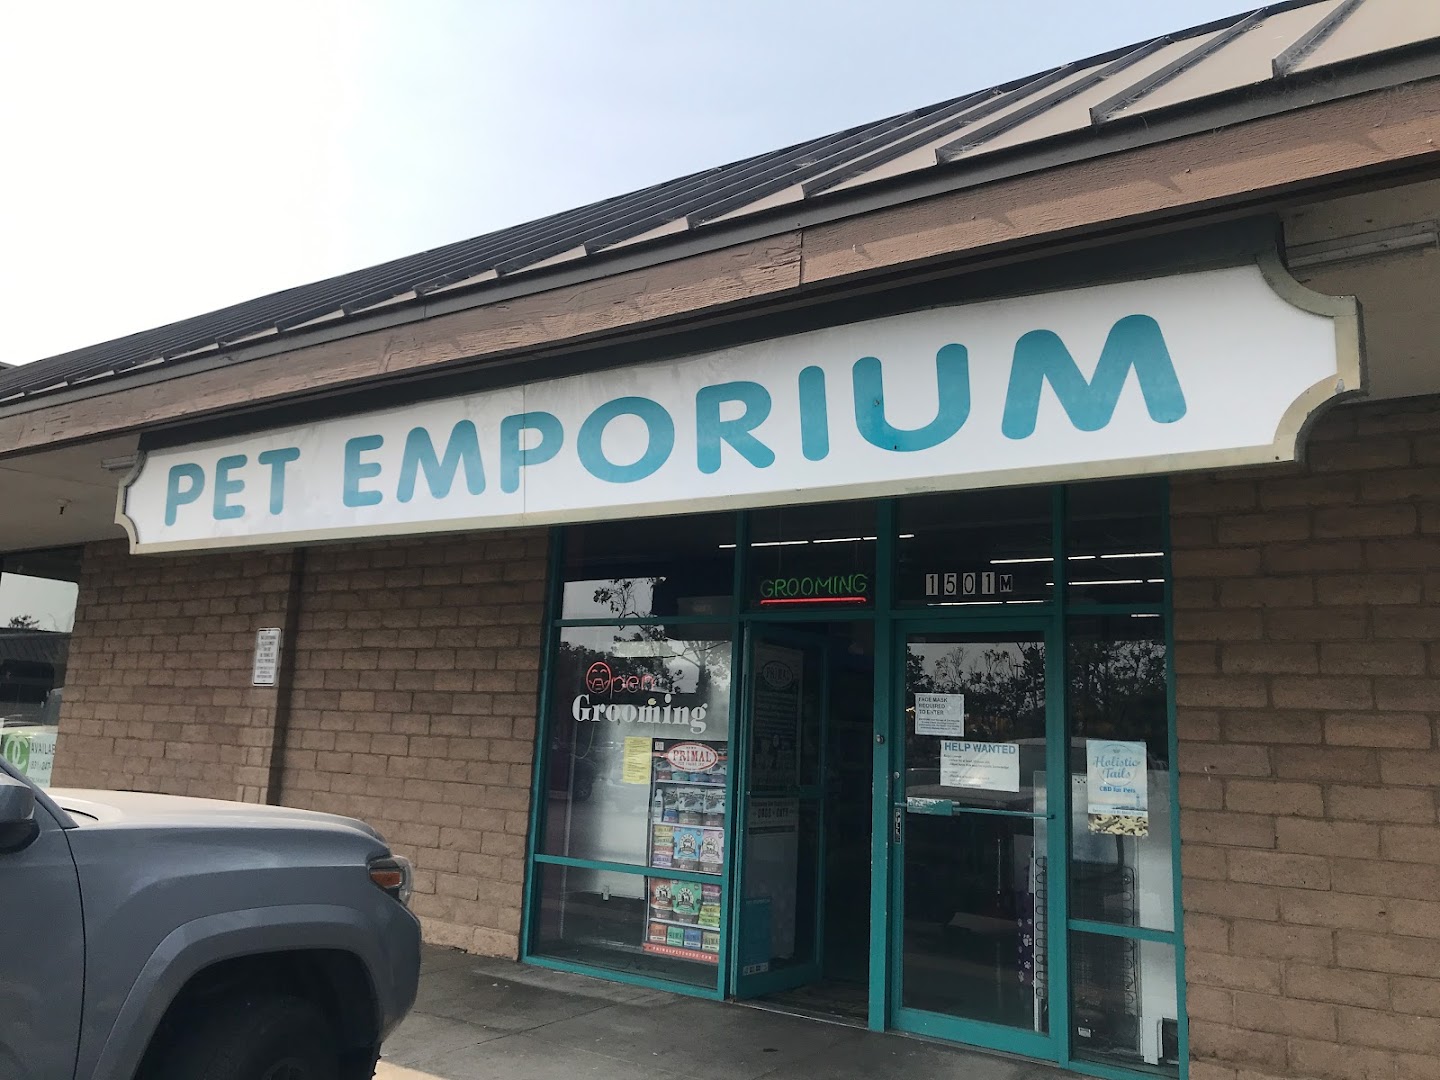 Pet Emporium